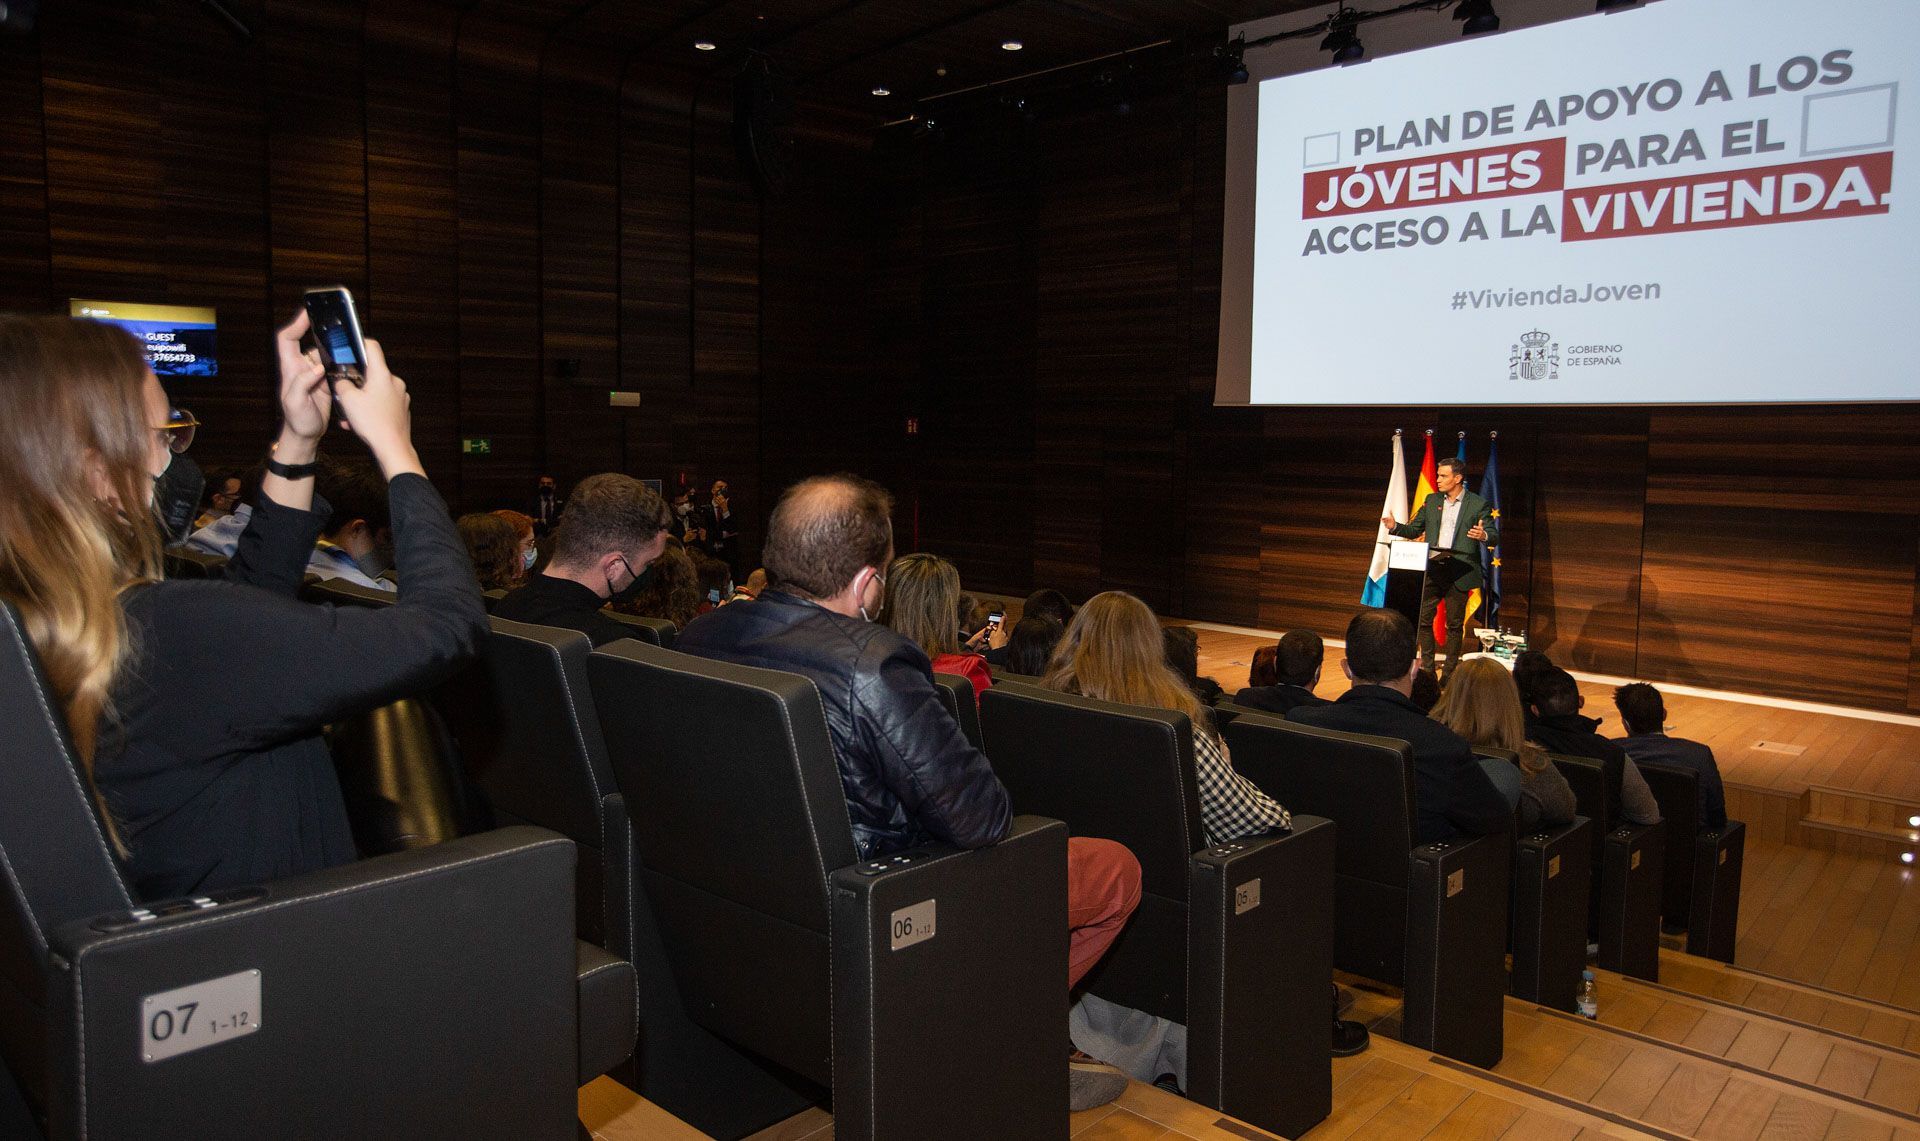 Pedro Sánchez presenta en la Comunitat Valenciana el plan de apoyo a los jóvenes para el acceso a la vivienda